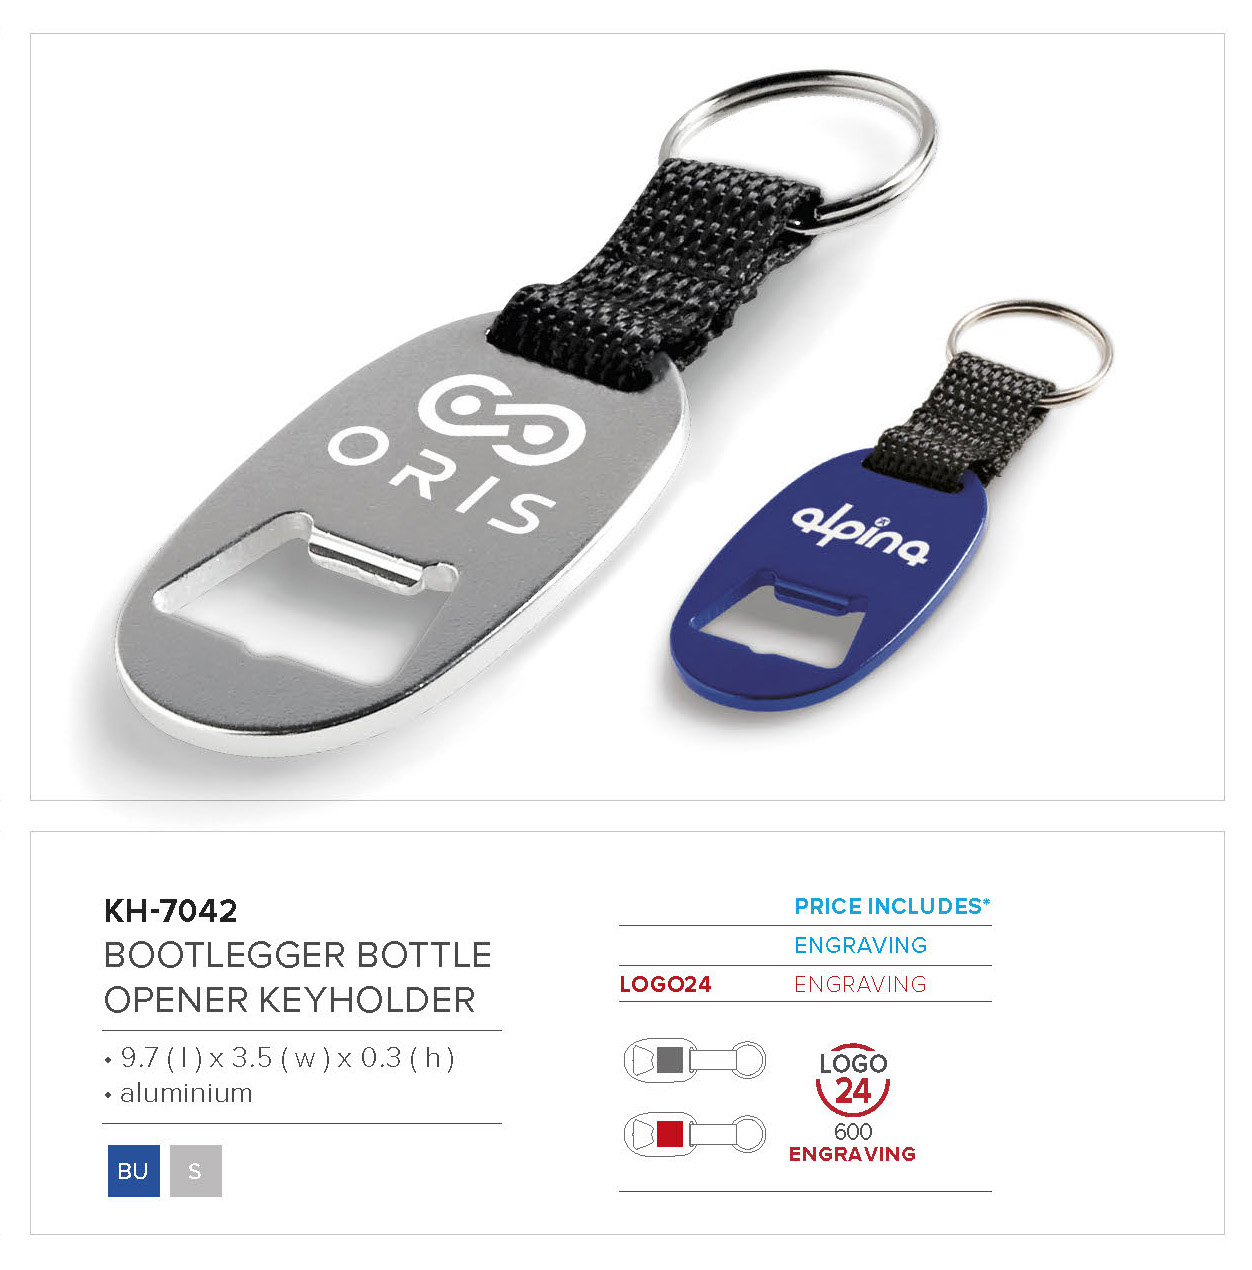 Bootlegger Bottle Opener Keyholder